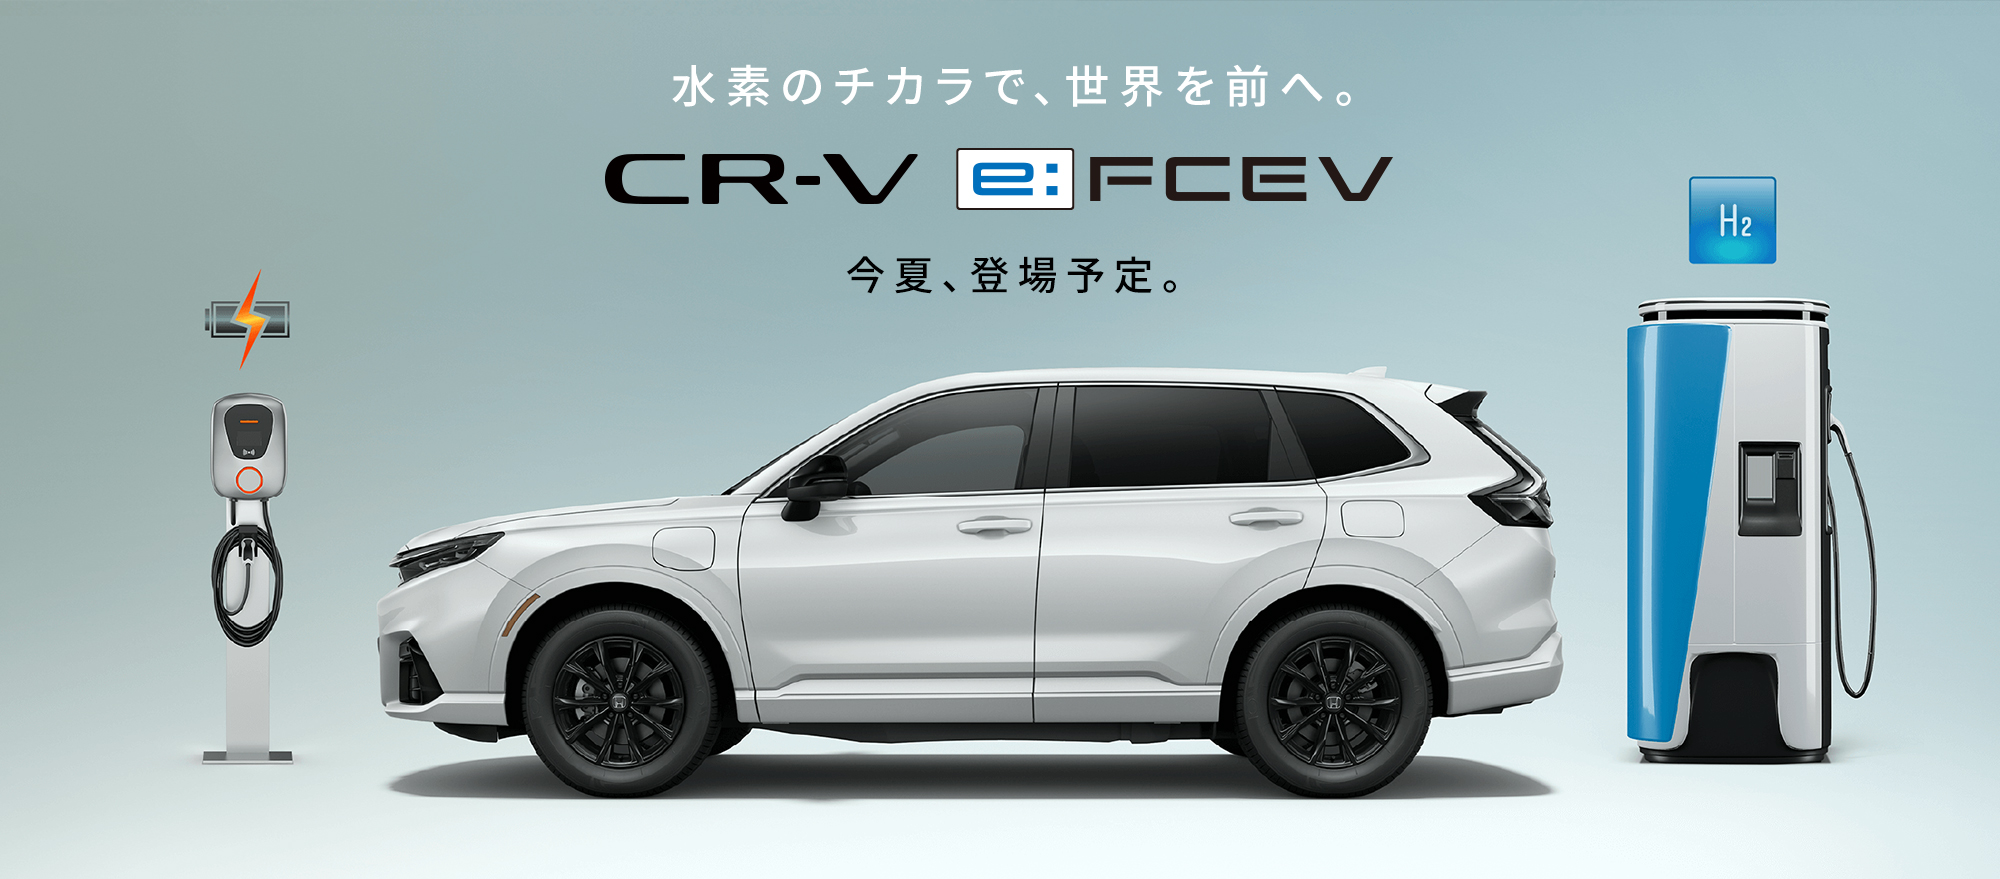 CR-V e:FCEV 水素のチカラで、世界を前へ。今夏、登場予定。